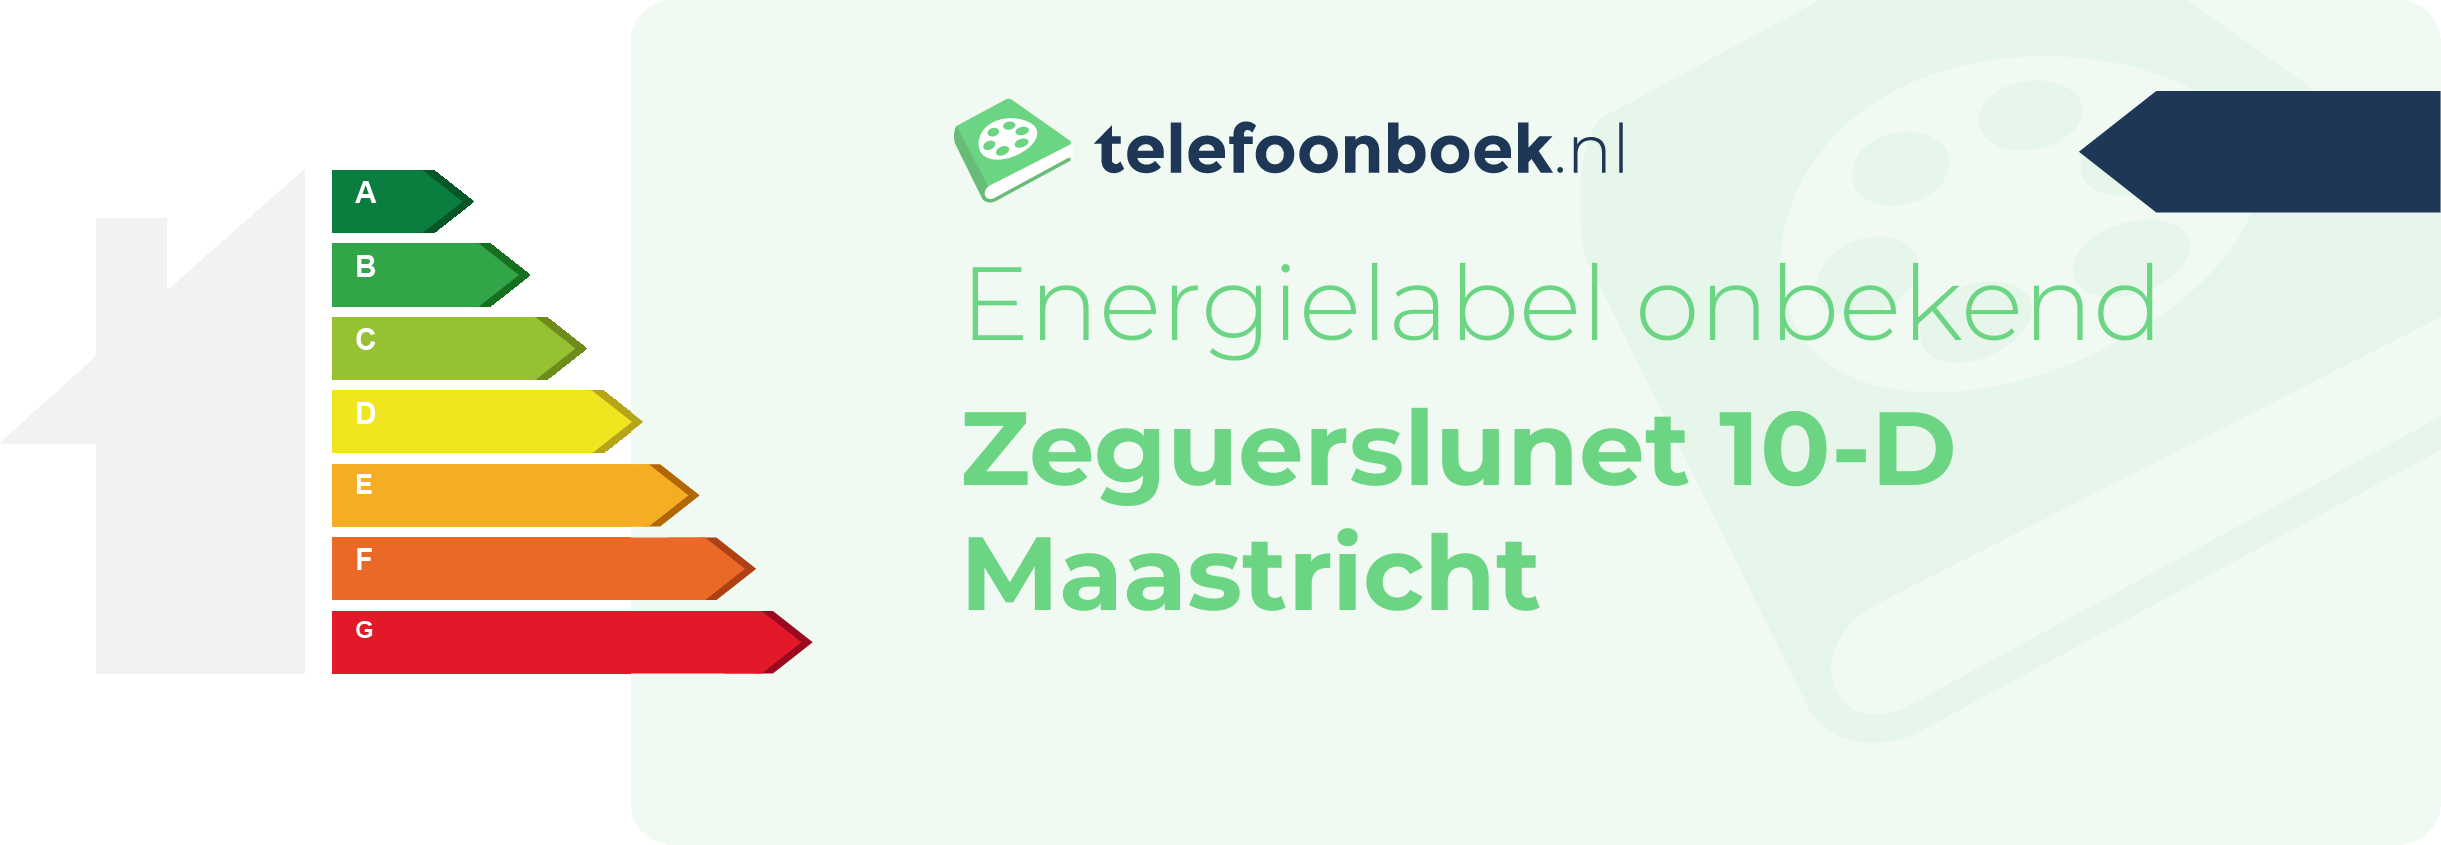 Energielabel Zeguerslunet 10-D Maastricht